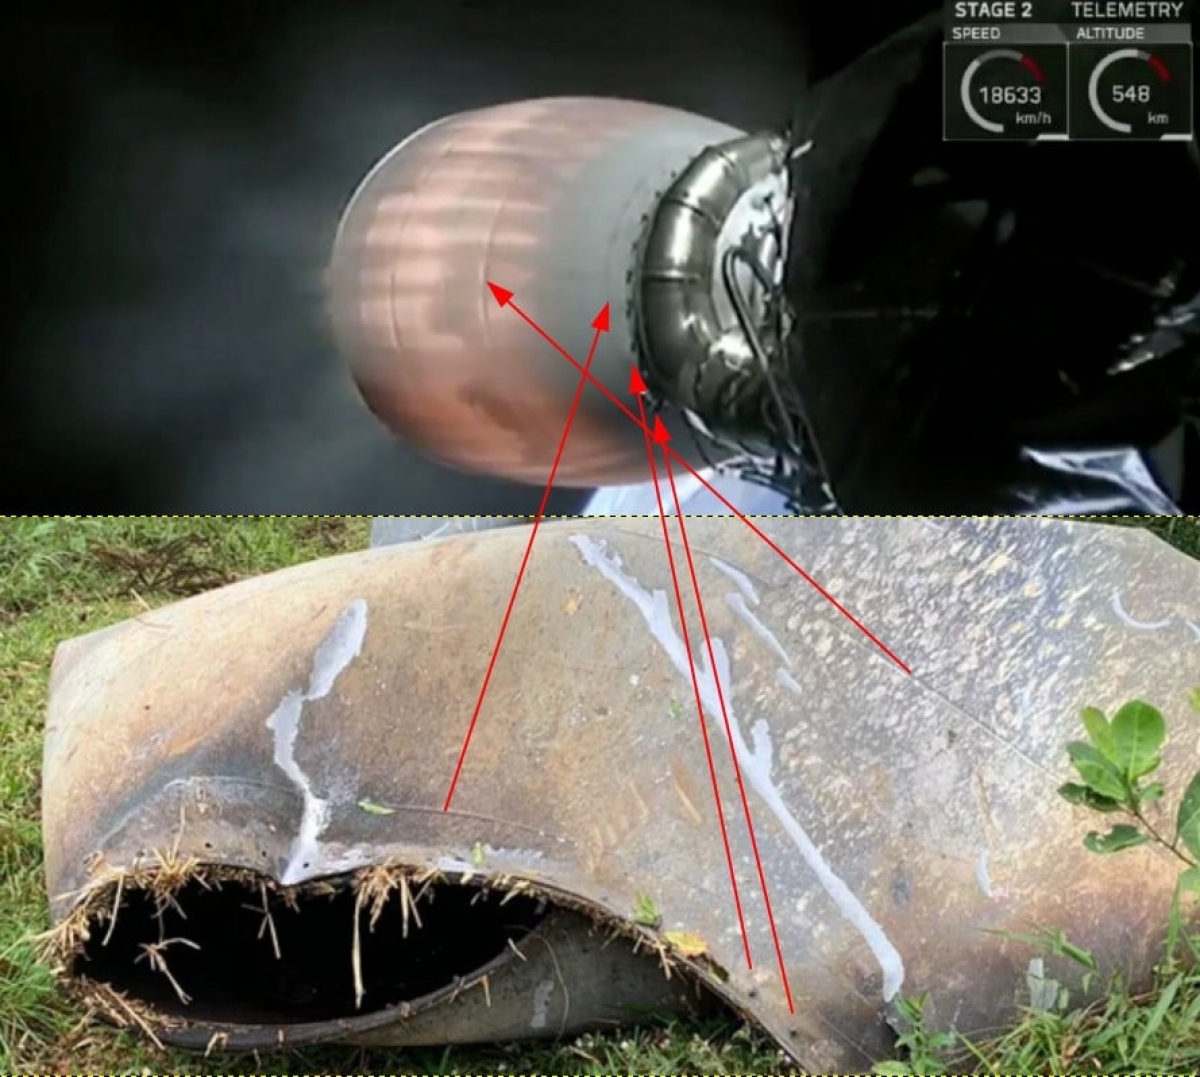 Semelhança entre a tubeira do segundo estágio do Falcon 9 (acima) e o objeto encontrado em São Mateus do Sul (abaixo) - Imagem: Jocimar Justino/ BRAMON